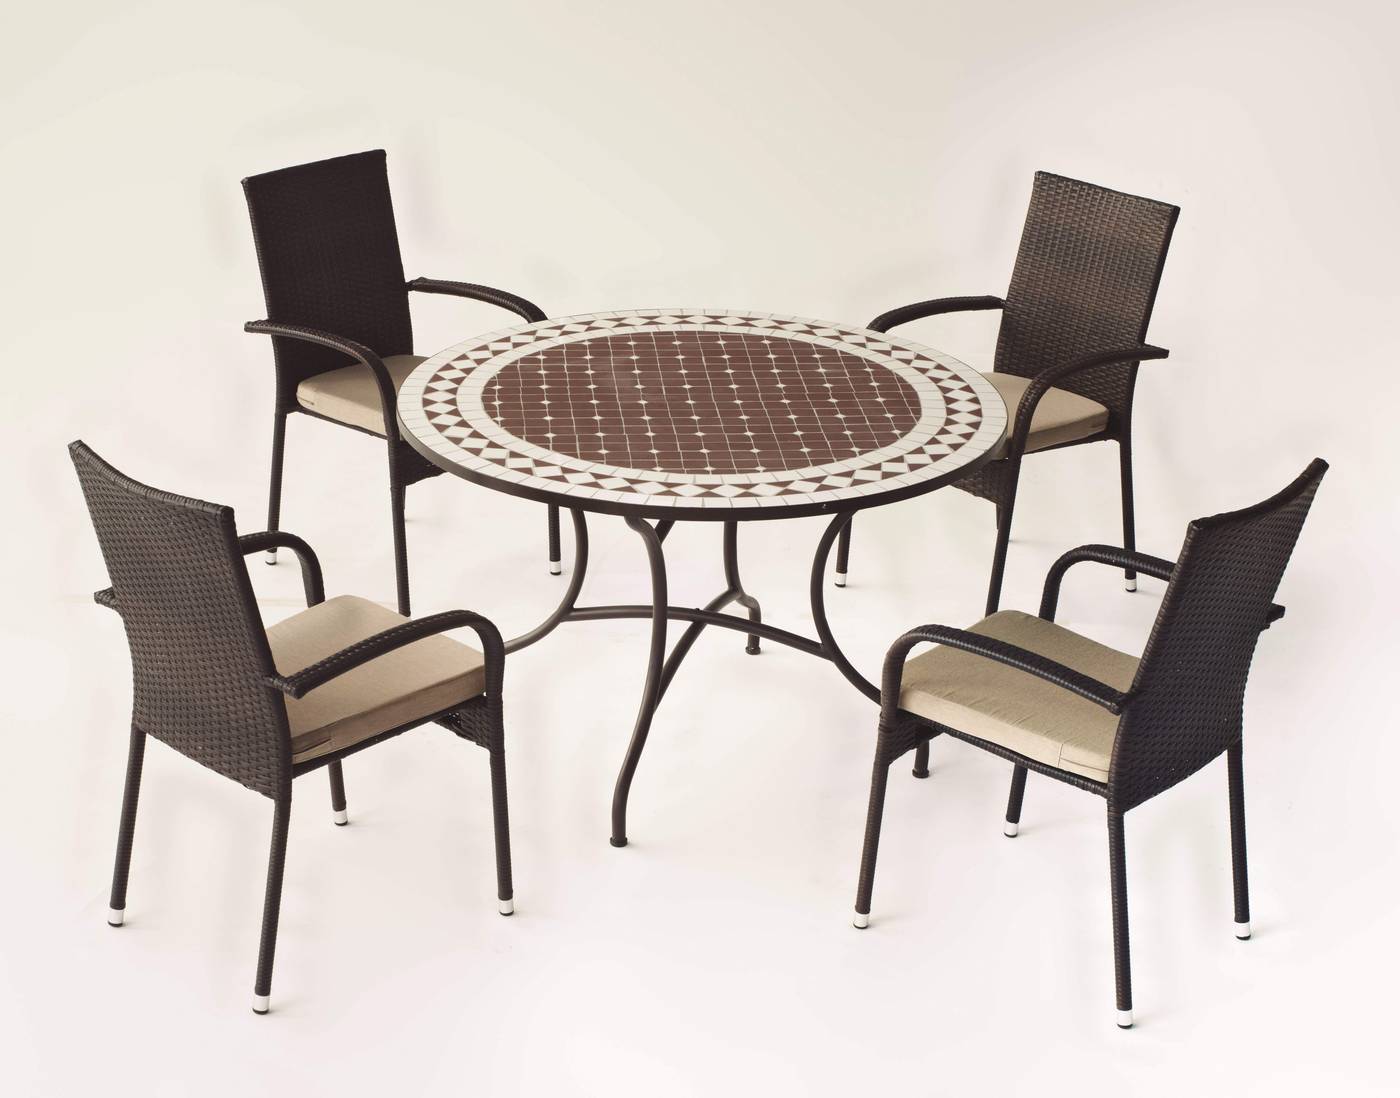 Conjunto de forja color marrón: mesa con tablero mosaico de 120 cm + 4 sillones de ratán sintético con cojines.